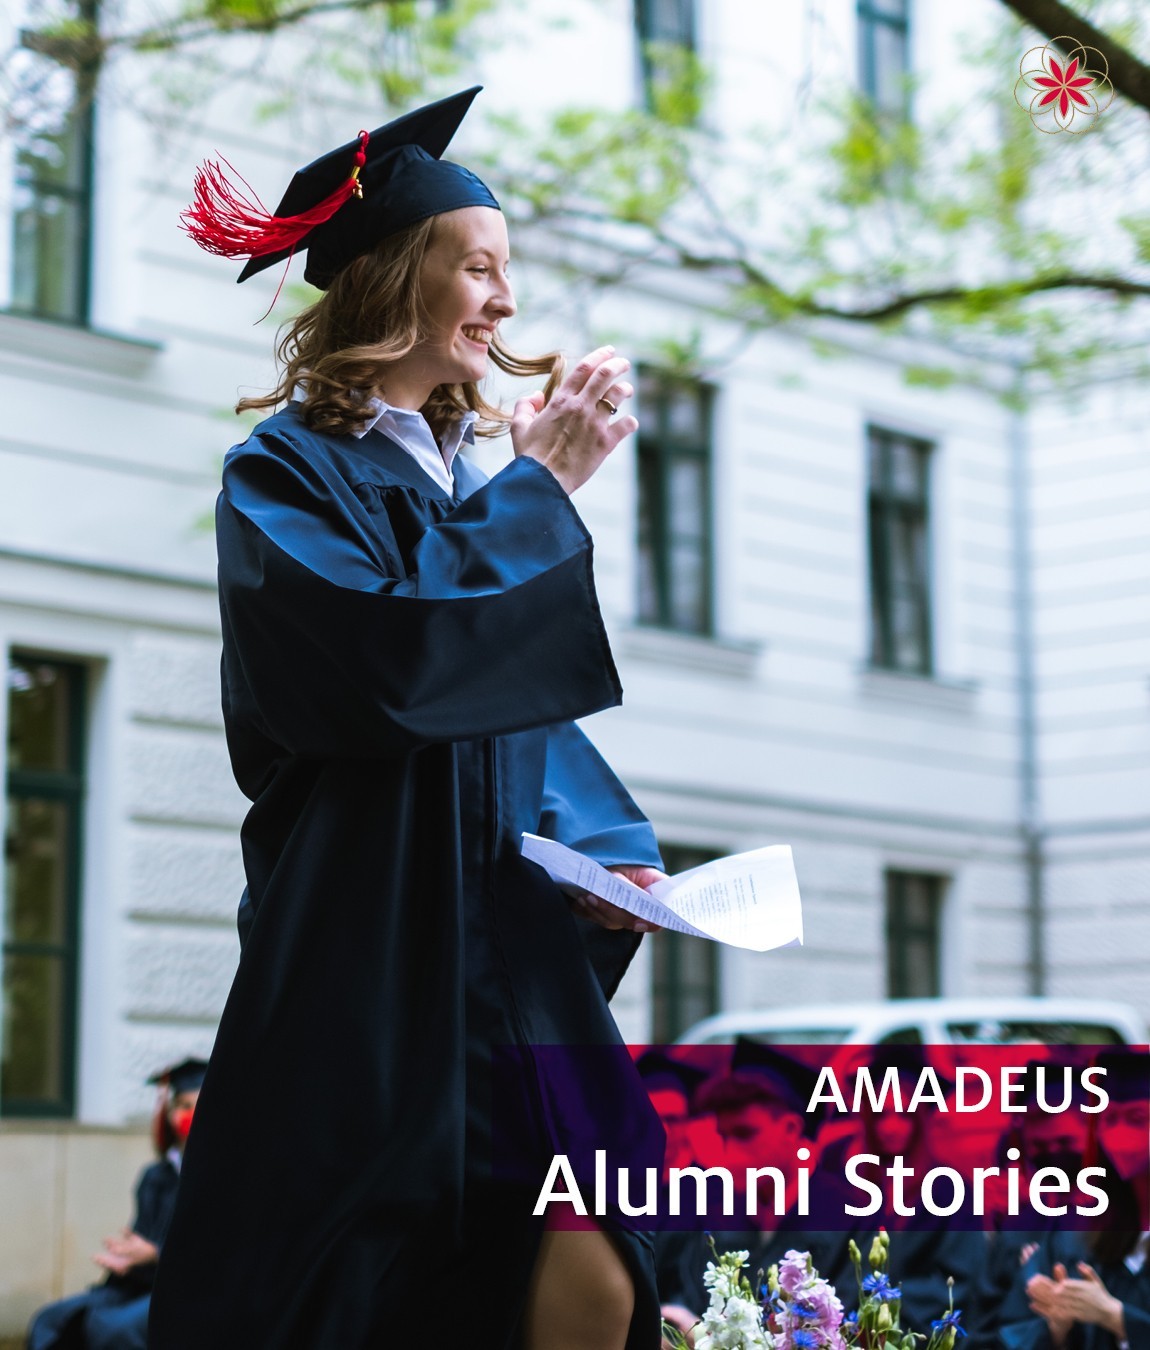 AMADEUS Alumni Update from Emilia Basilides at Sigmund Freud University in Vienna